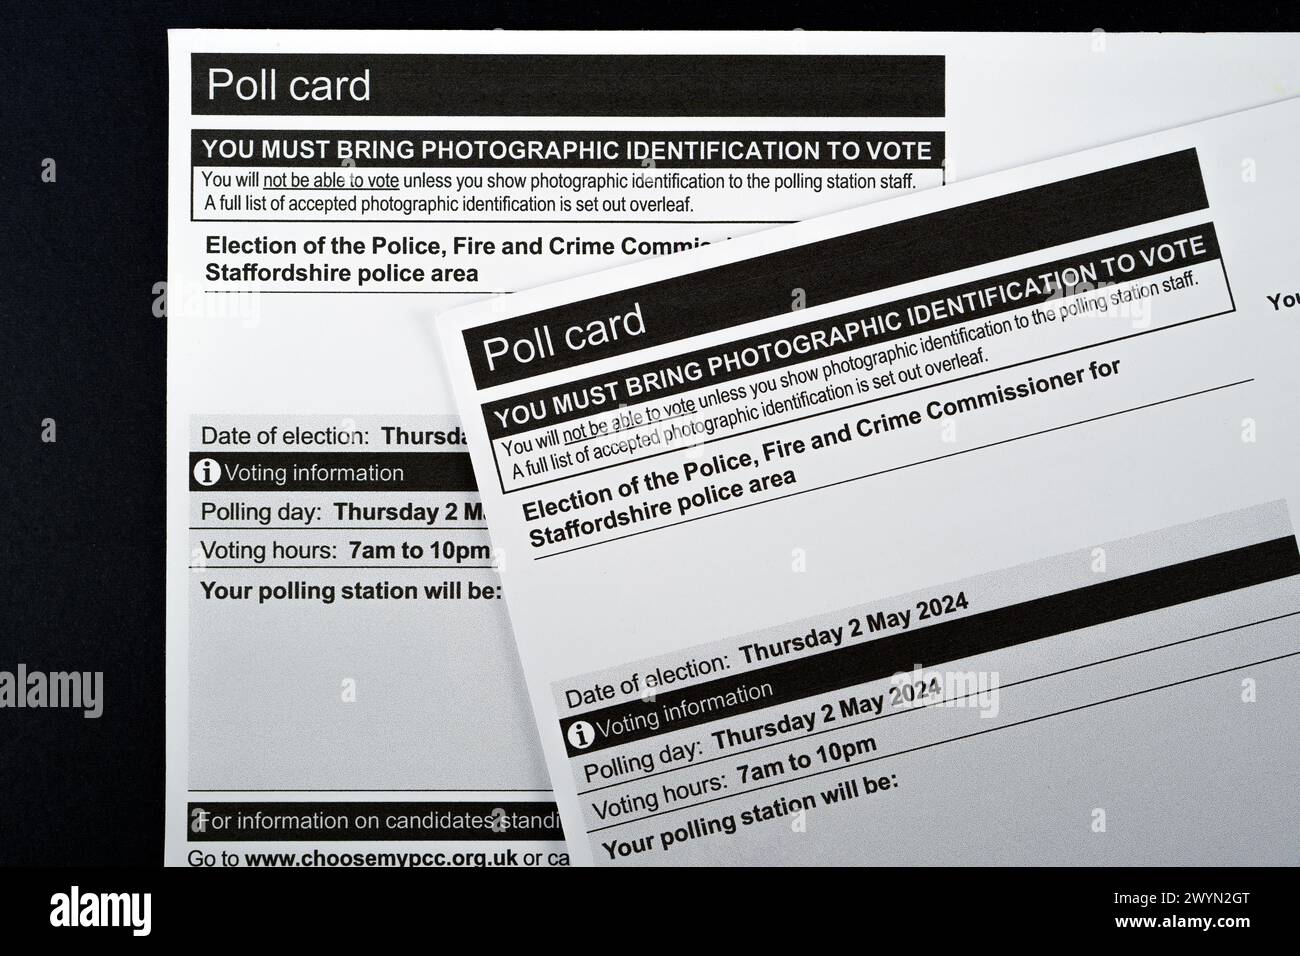 Cartes de vote pour l'élection du commissaire d'incendie et de crime de police pour la zone de police du Staffordshire. Stafford, Royaume-Uni, 7 avril 2024 Banque D'Images